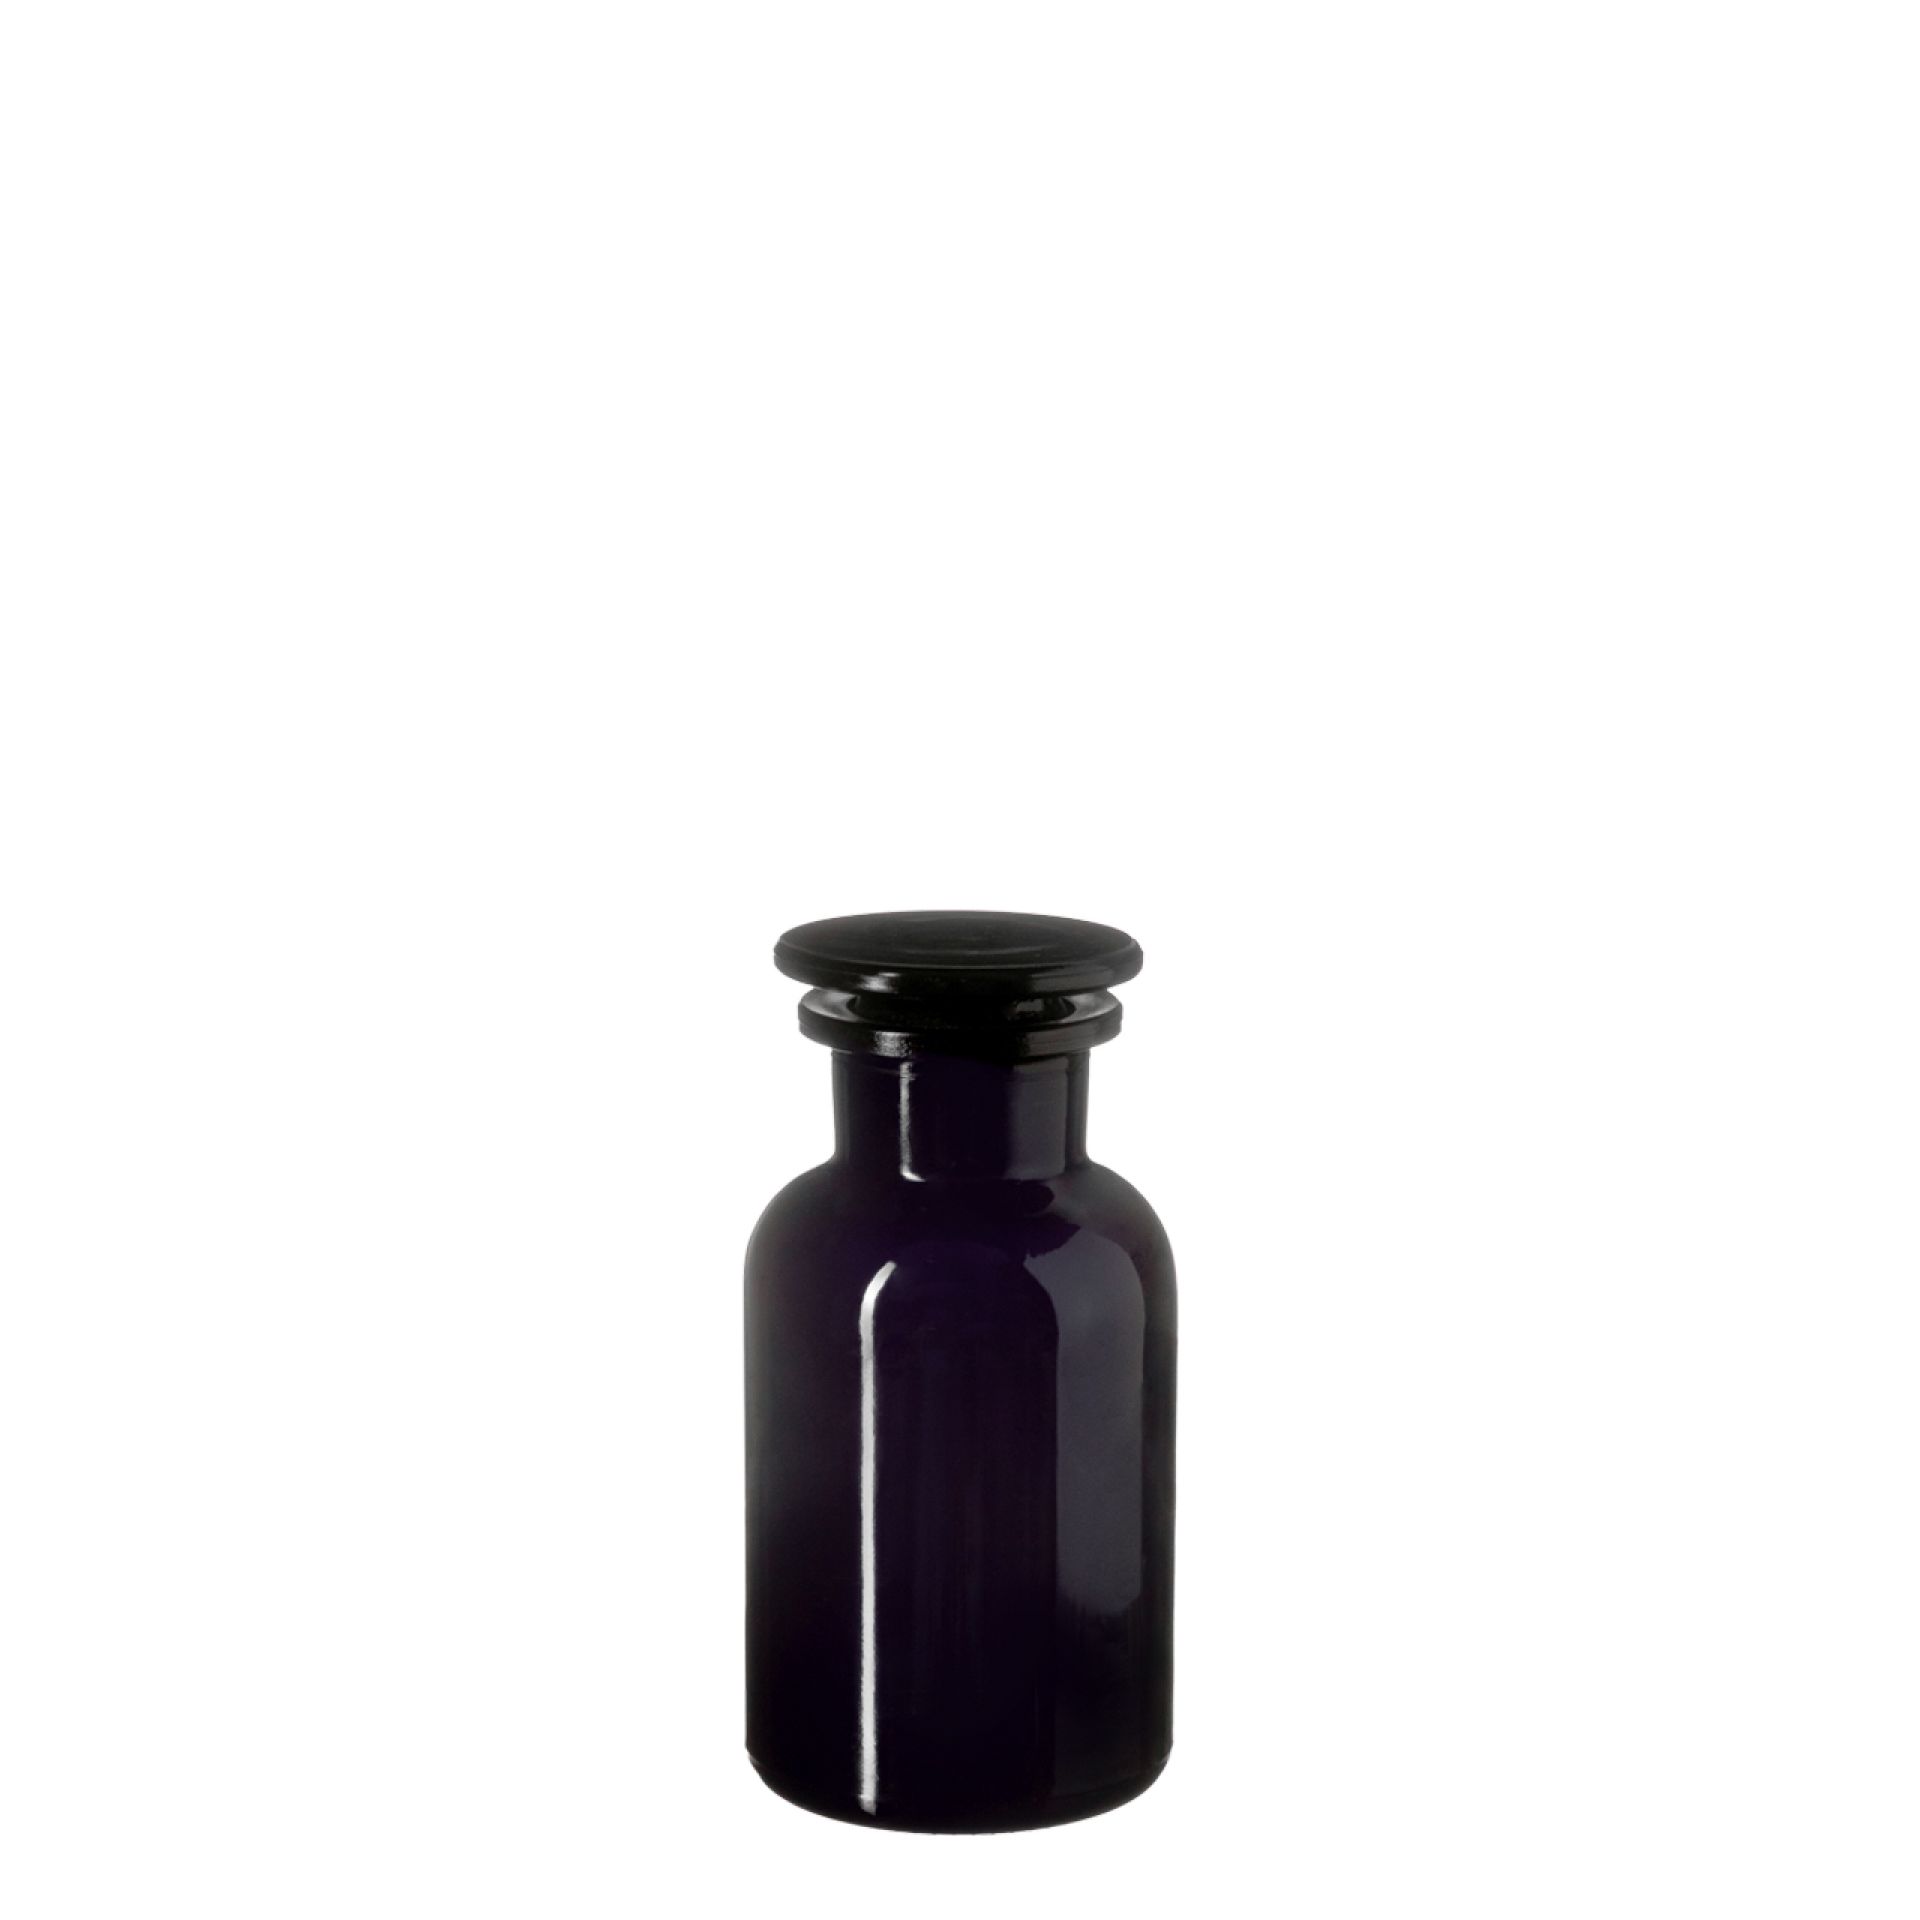 Apothecary jar Libra 250ml, glass stopper, Miron